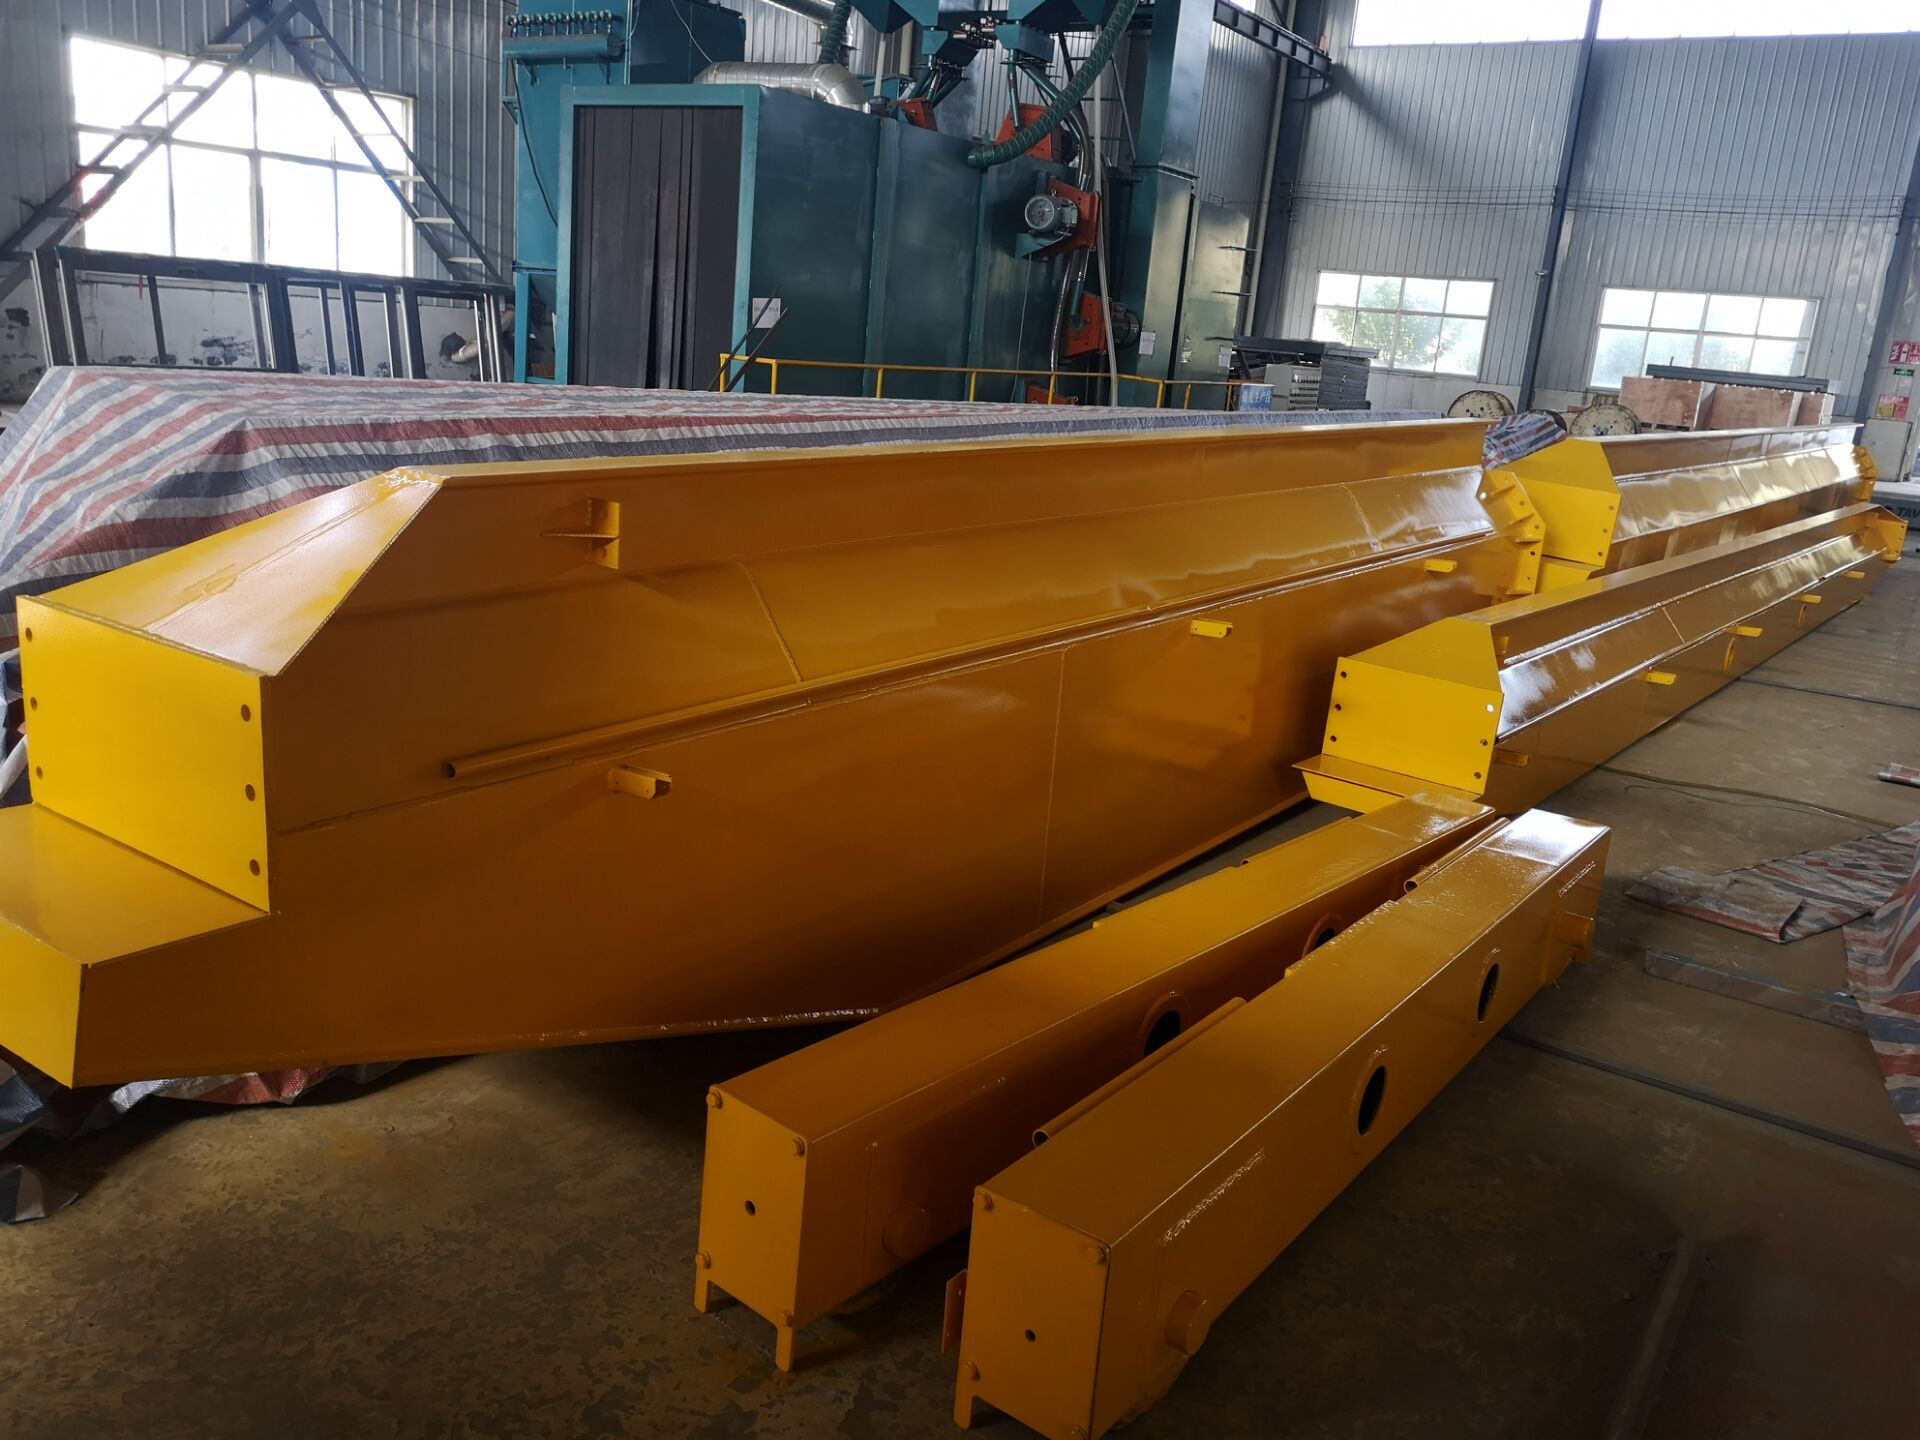 5 Ton Bridge Crane Finished Production for Zimbabwe Customer